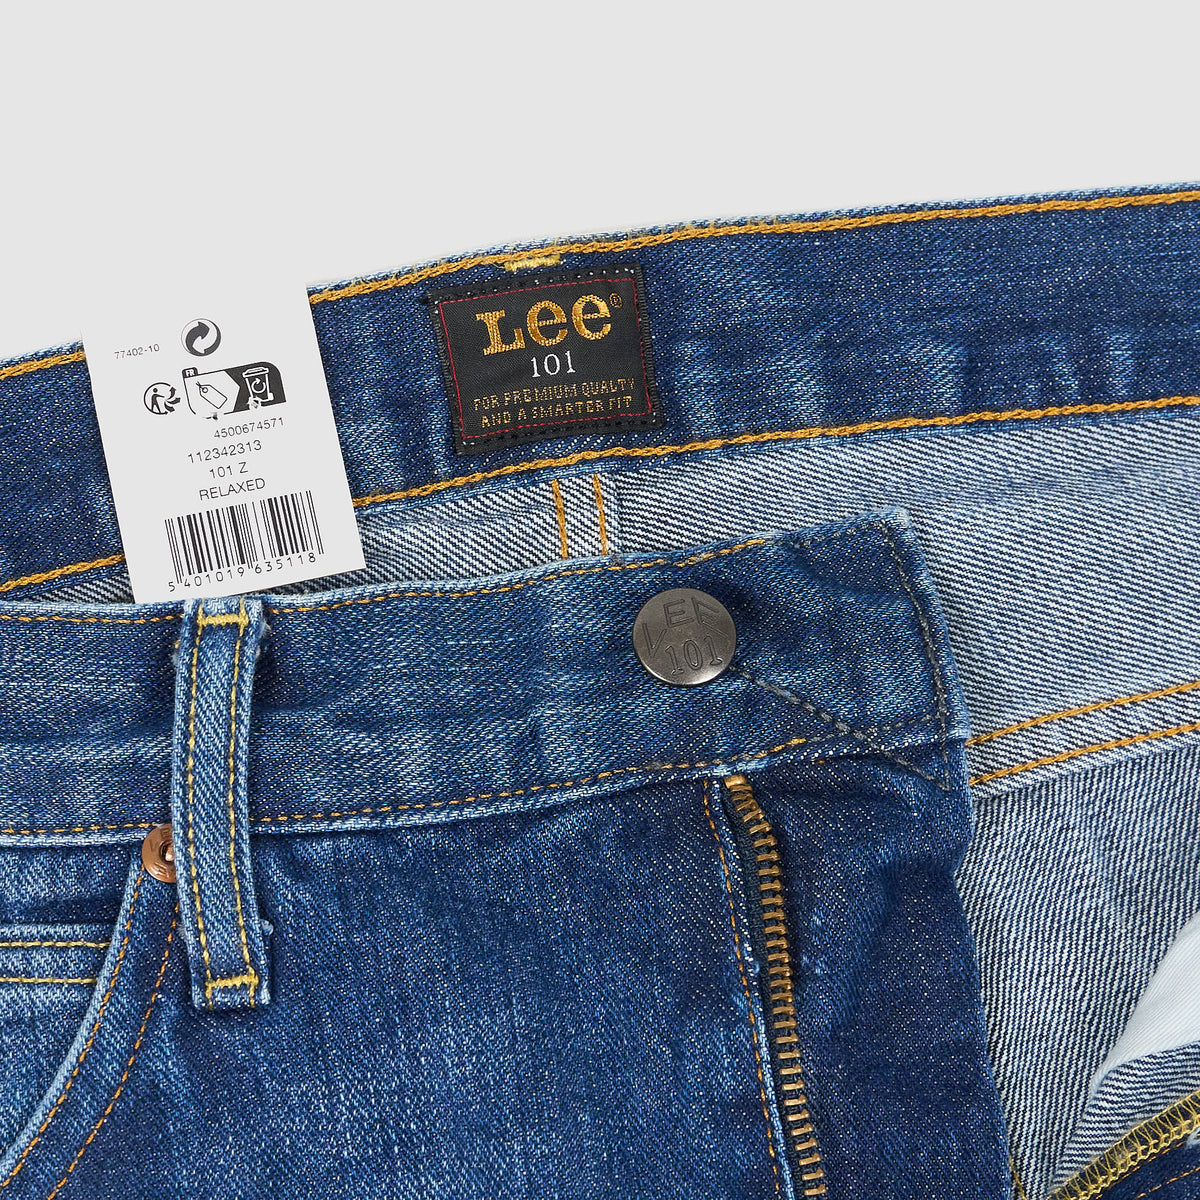 Lee 5-Pocket 101 Z Selvage Denim Jeans